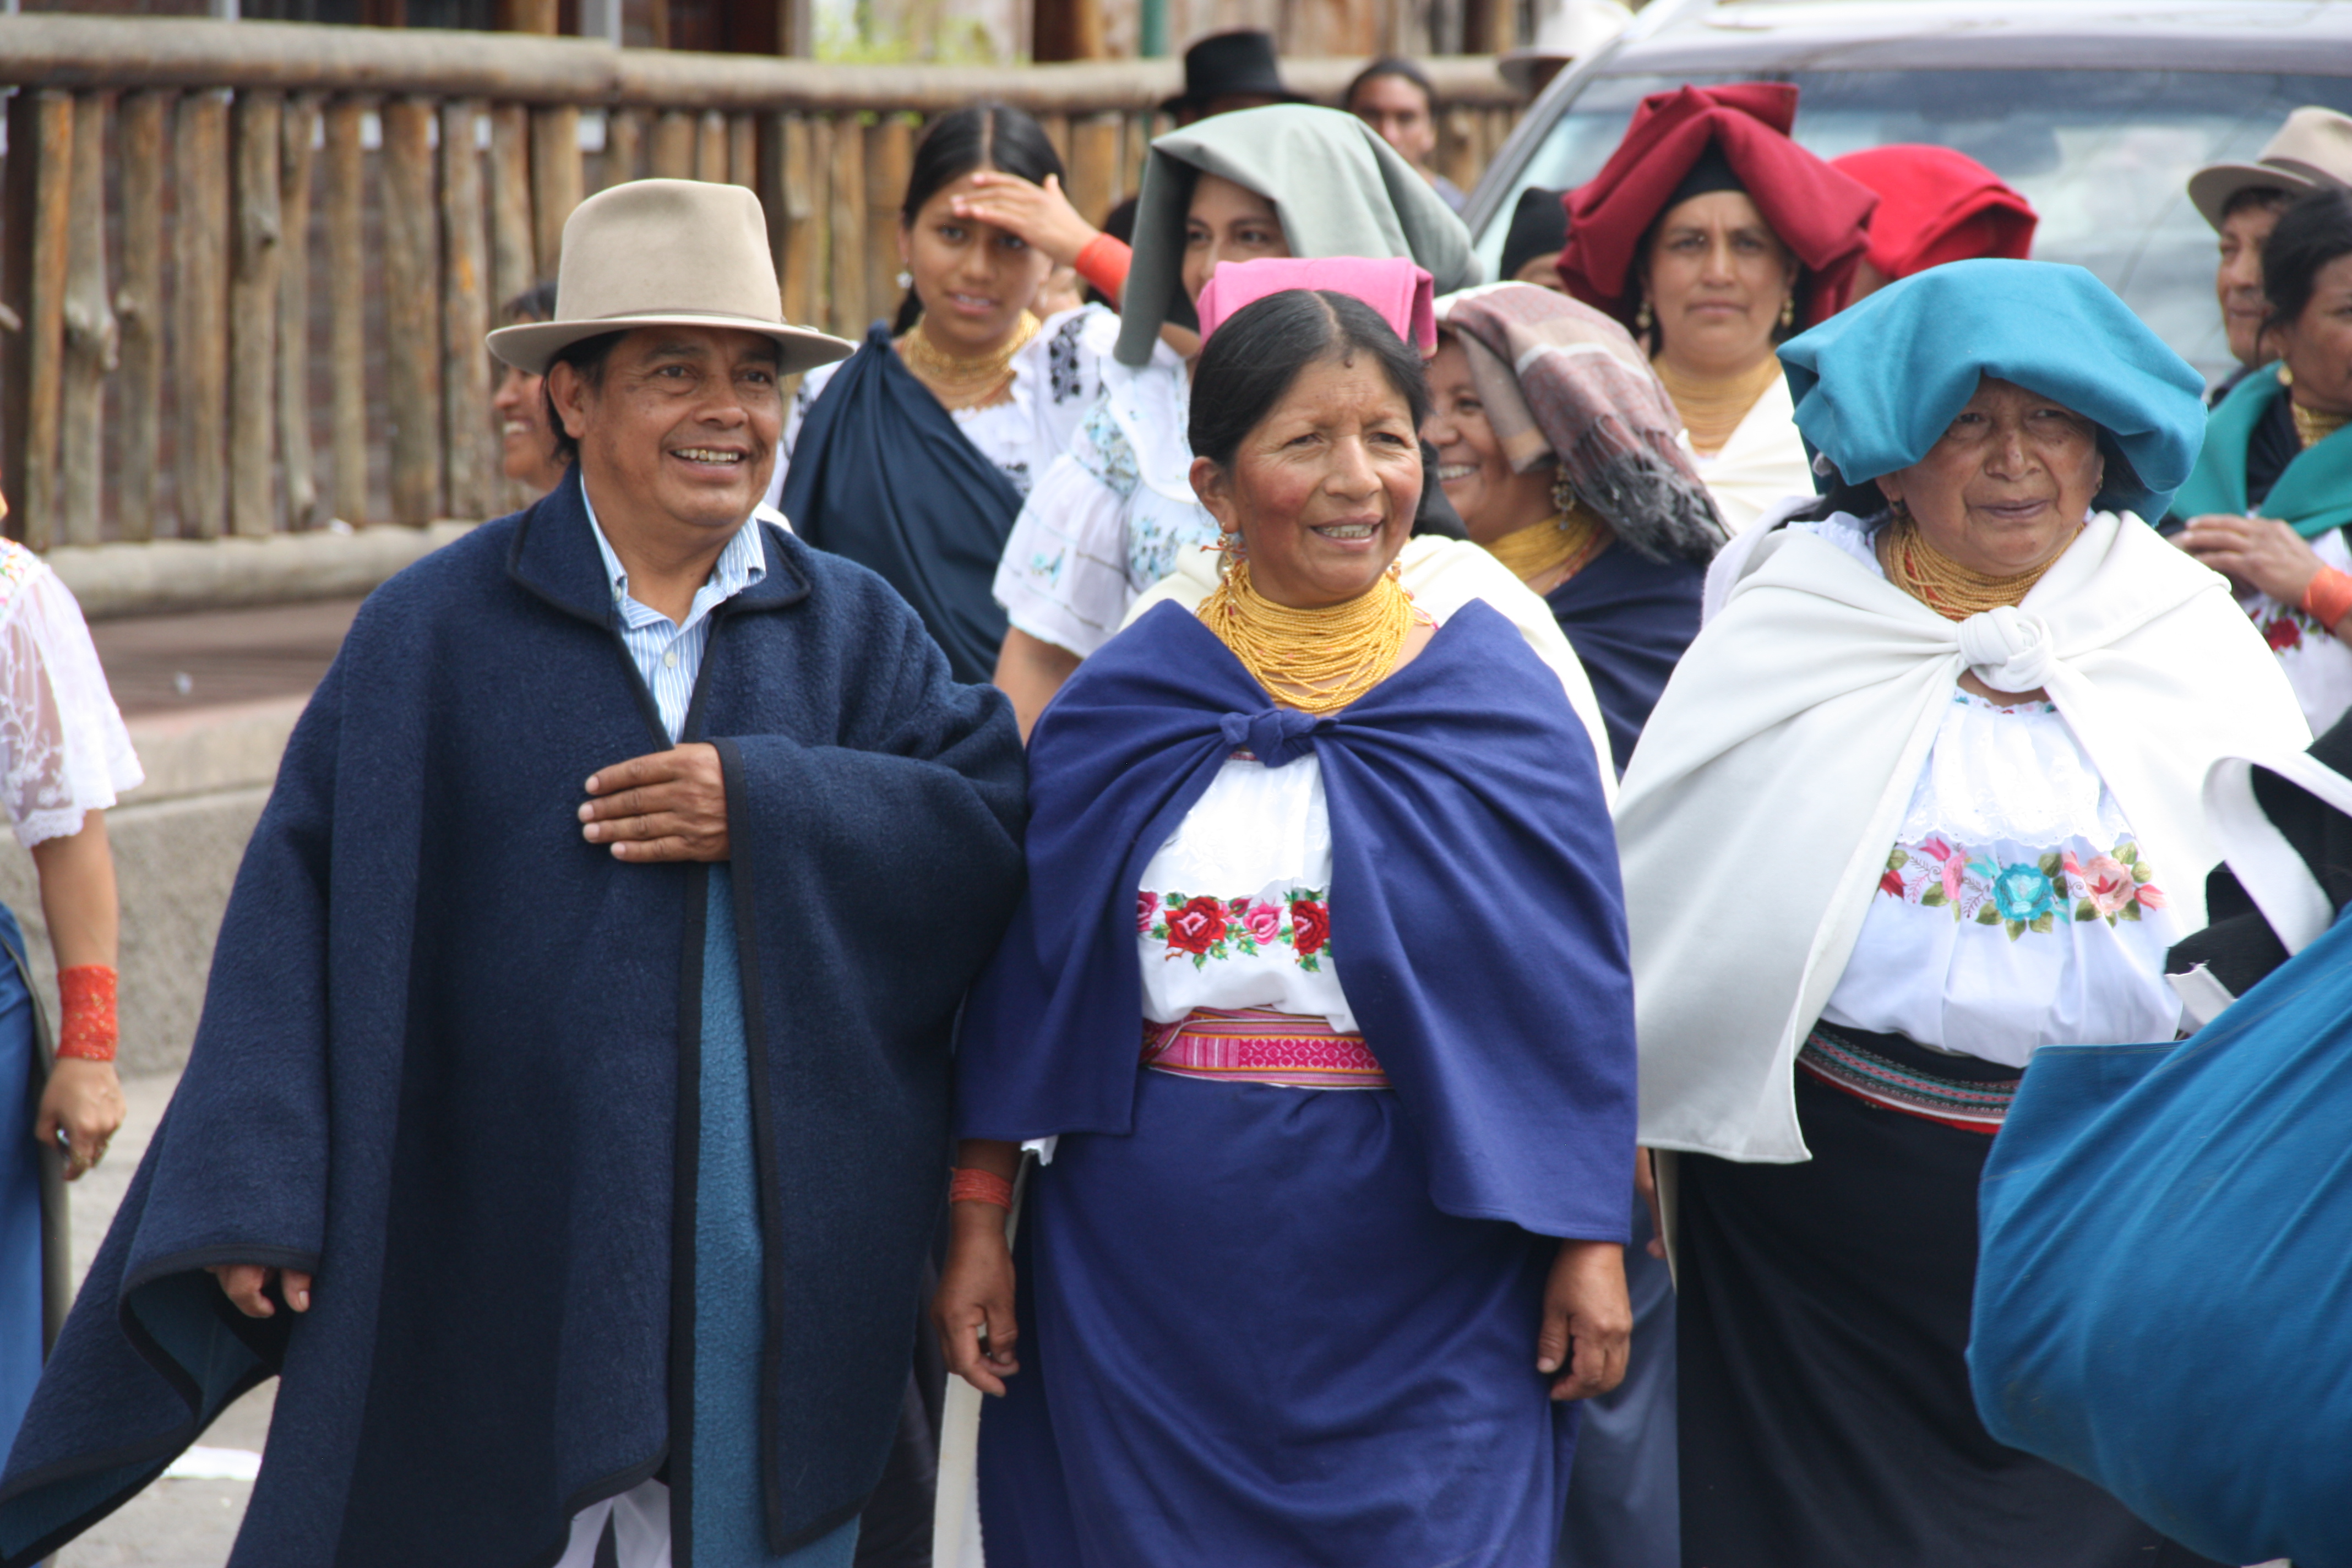 Hombres y mujeres con vestimenta del pueblo Otavalo, caminando a la iglesia de la parroquia Eugenio Espejo de Otavalo. 